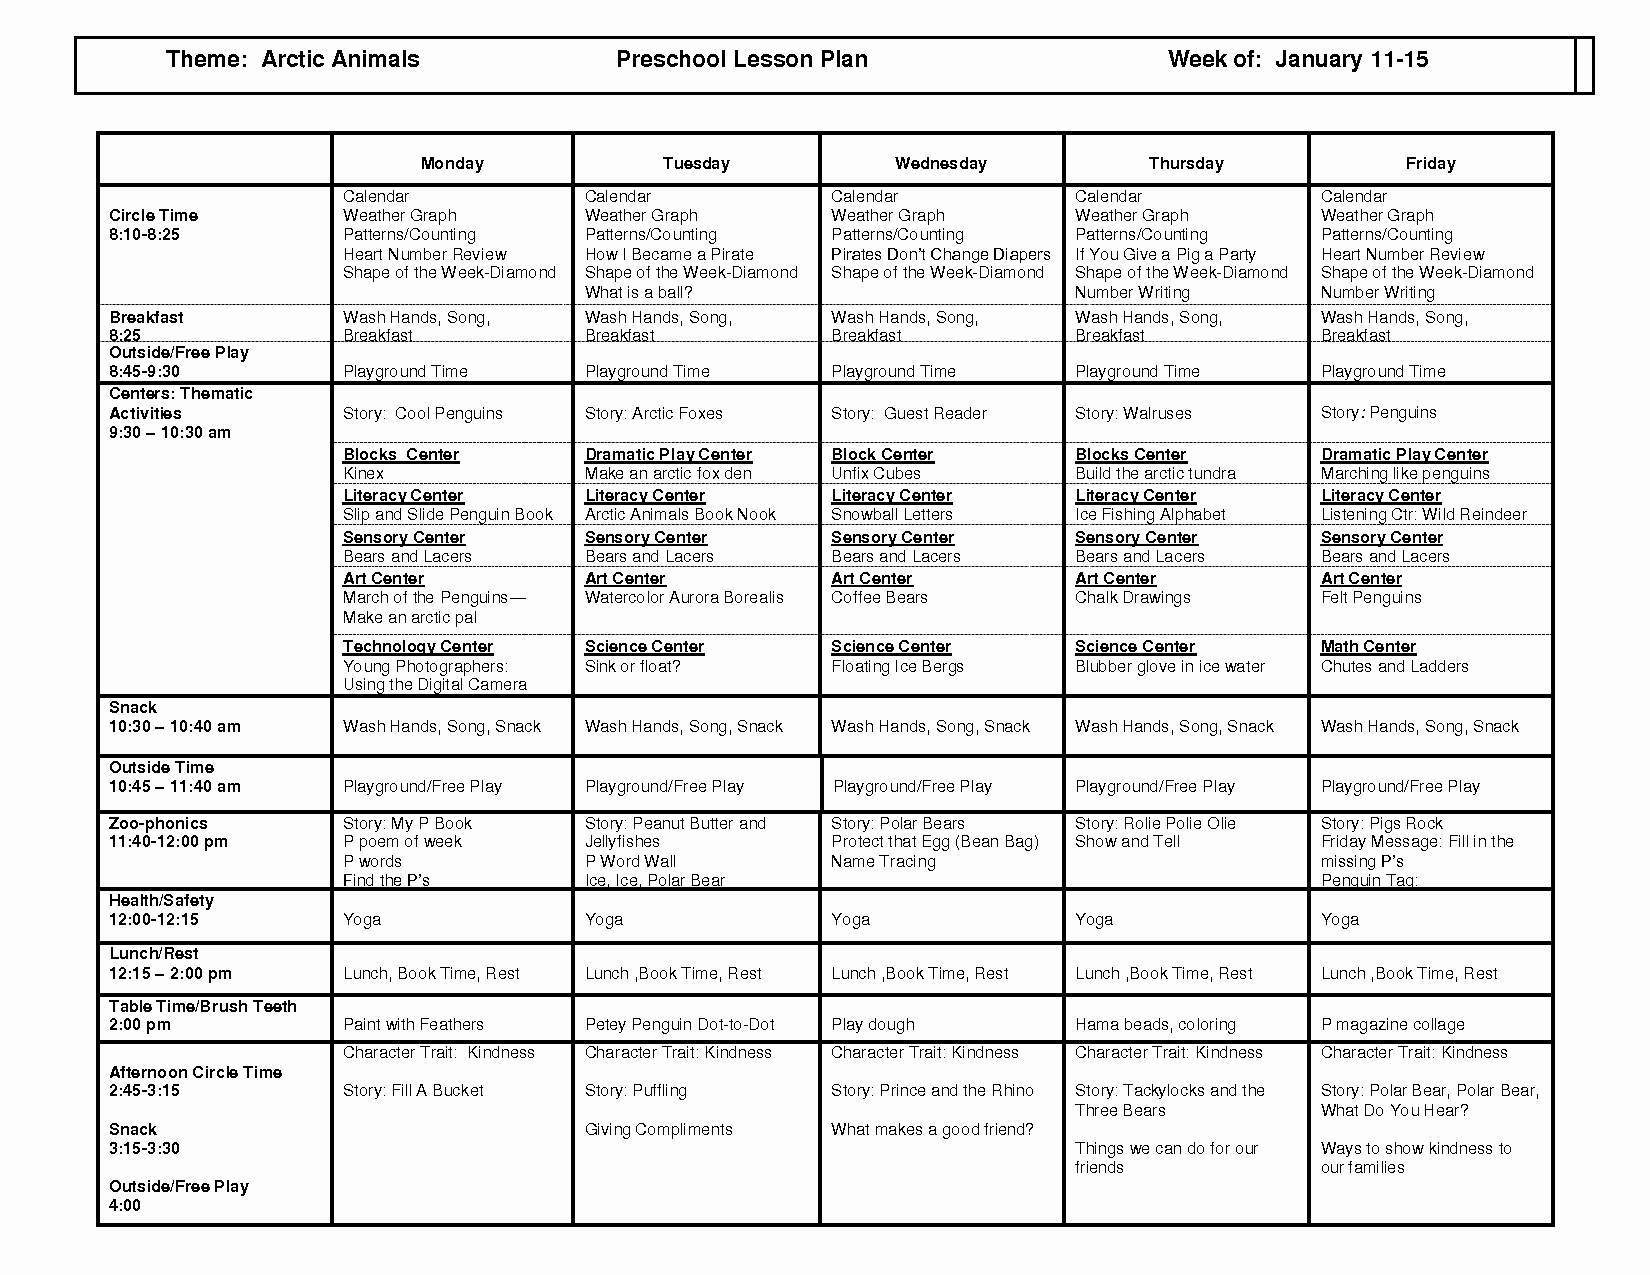 Preschool Weekly Lesson Plan Template Elegant Mon Core Lesson Plans Printable Lesson Plan Template